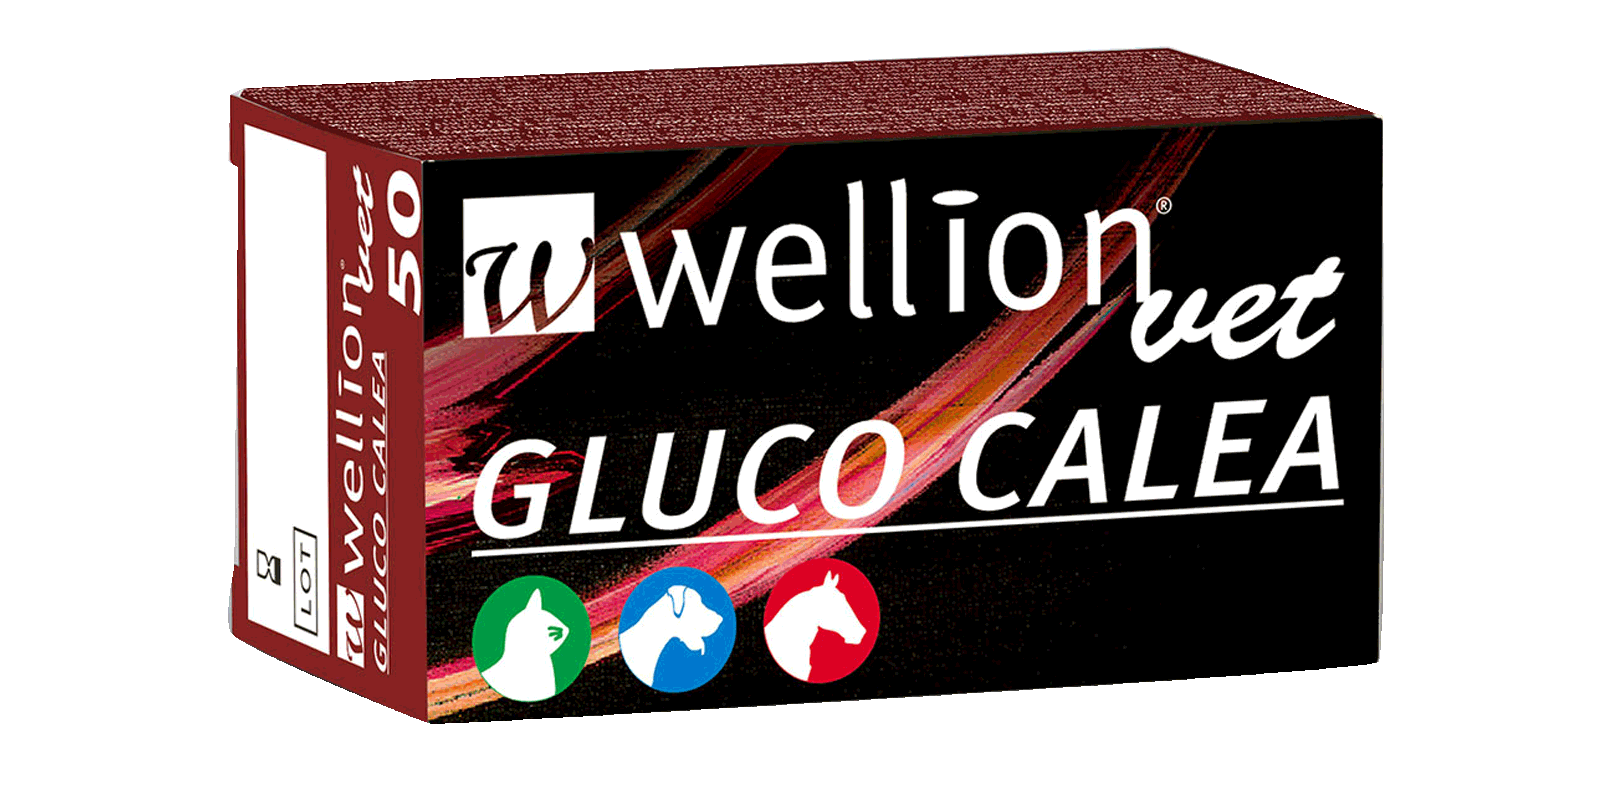 WELLVET715 WellionVet GLUCO CALEA Blutzuckerteststreifen, 50 Stück